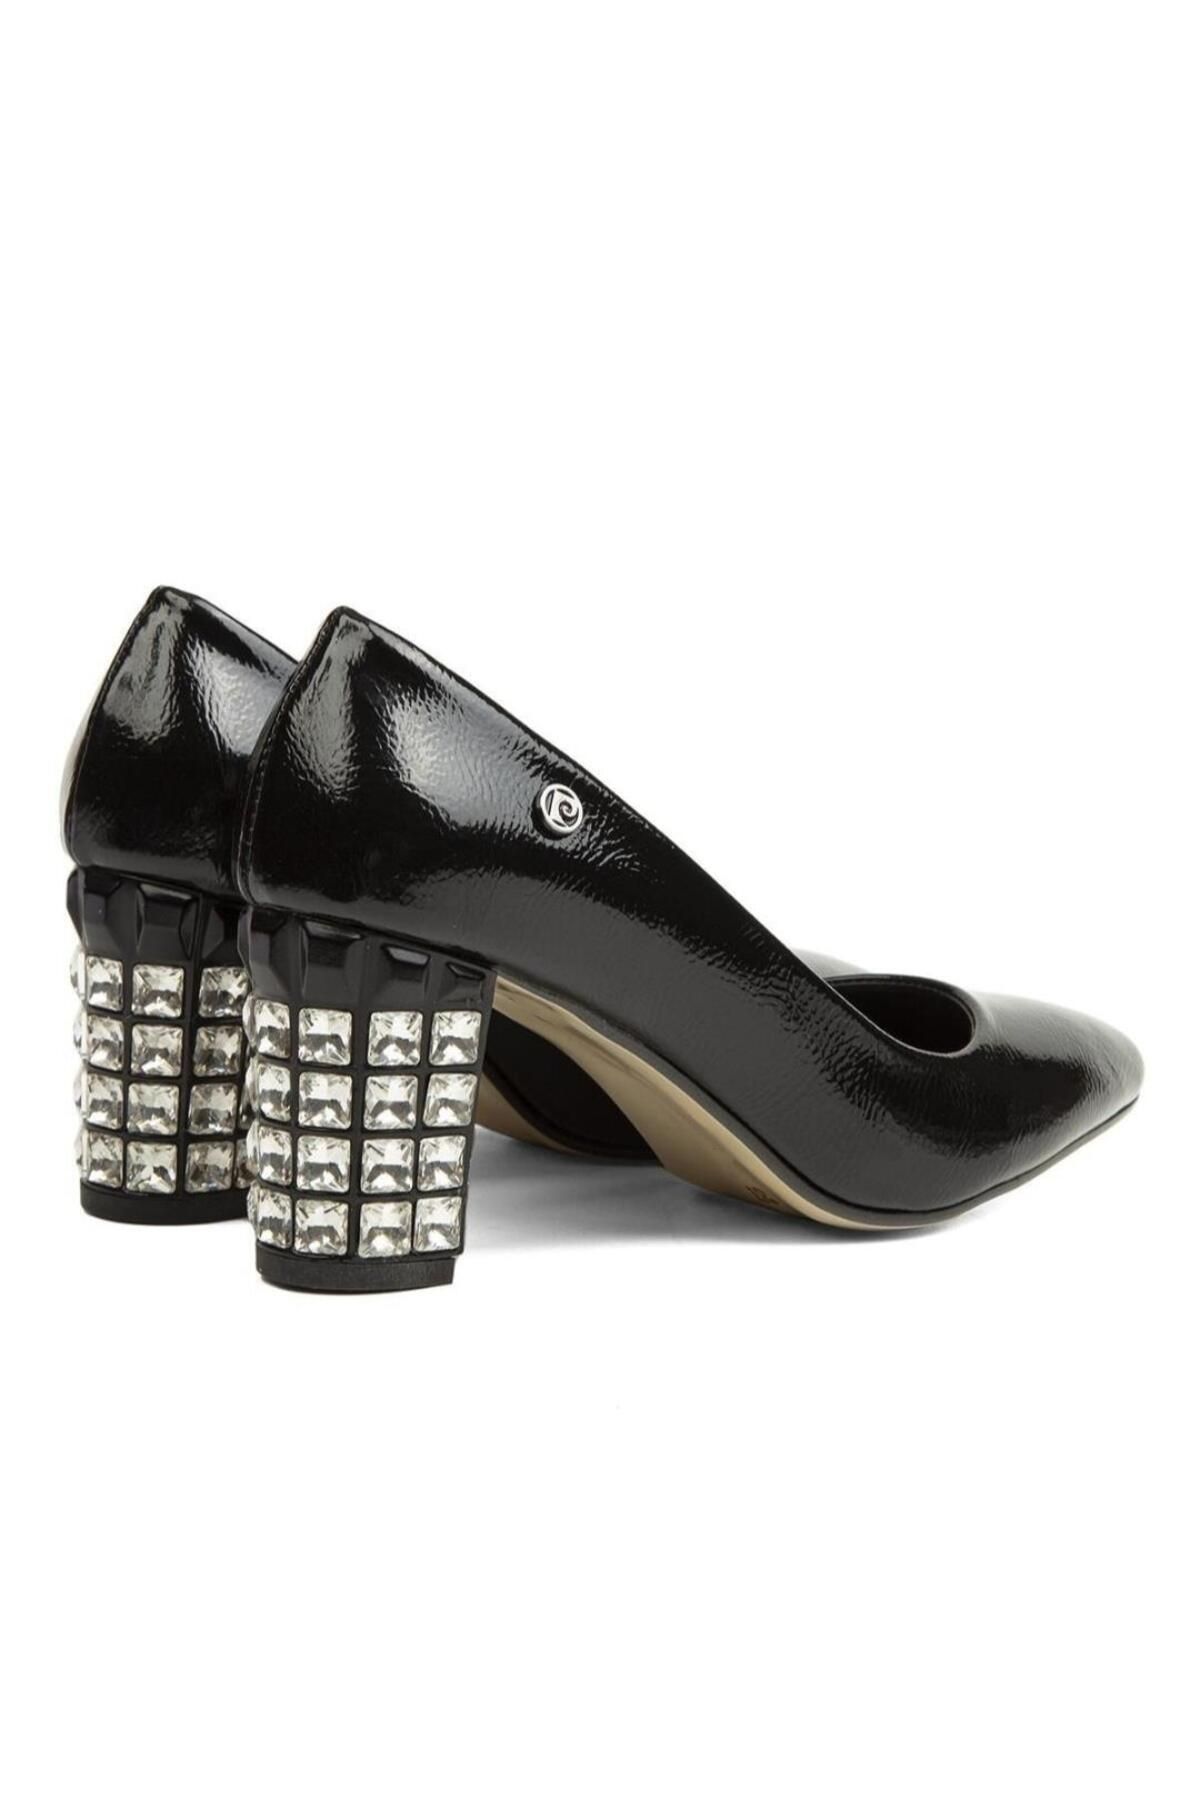 Pierre Cardin Pc51201 Kadın Kırışık Rugan Taşlı Topuk Stiletto Ayakkabı